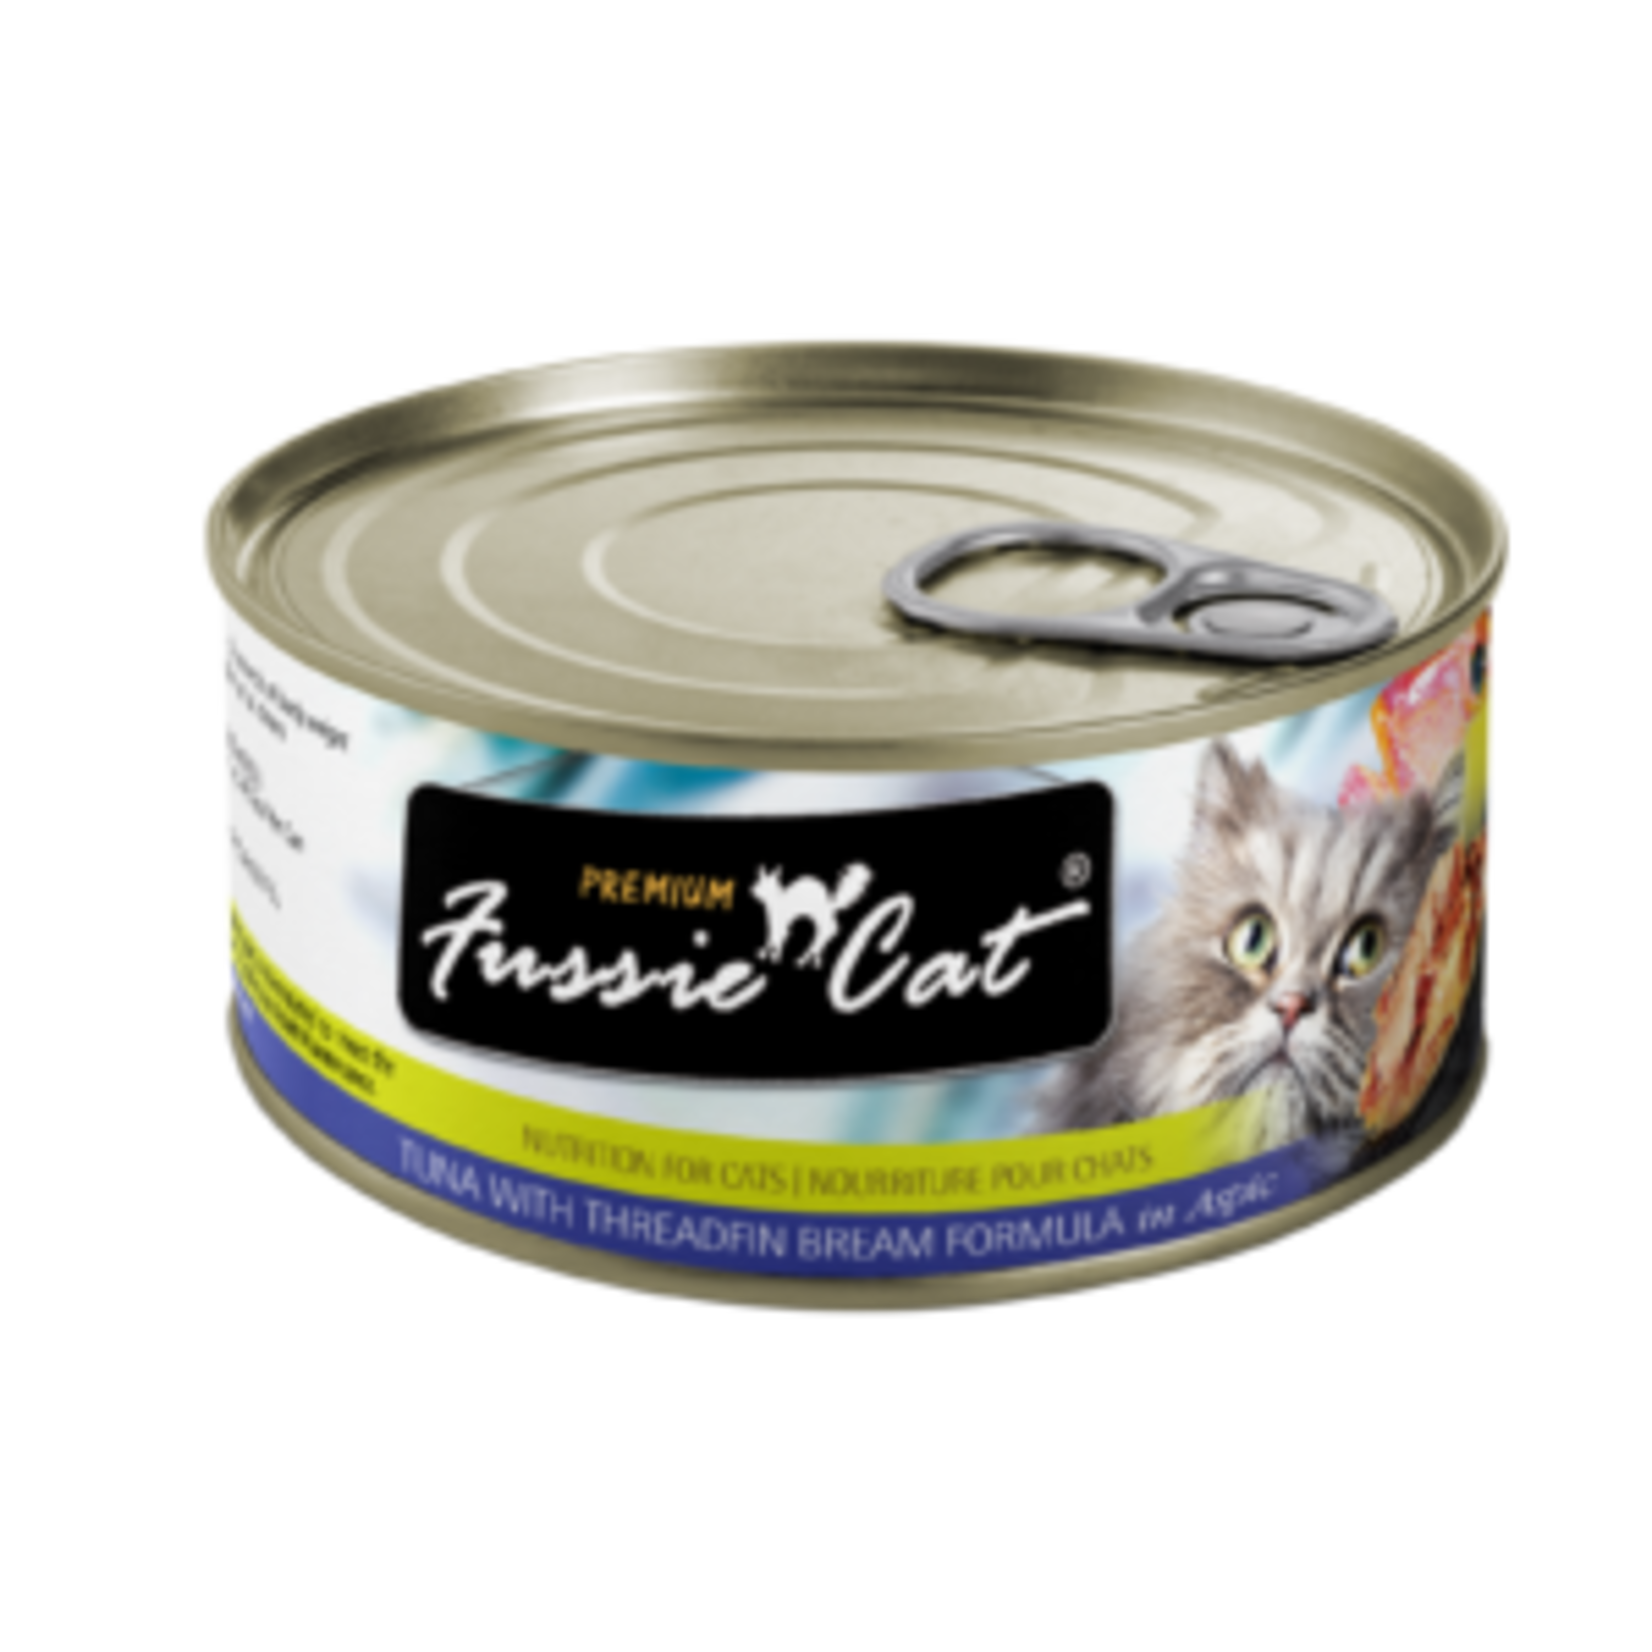 Fussie Cat Fussie Cat Can Tuna with Threadfin Bream Formula in Aspic 2.8oz Can Grain Free